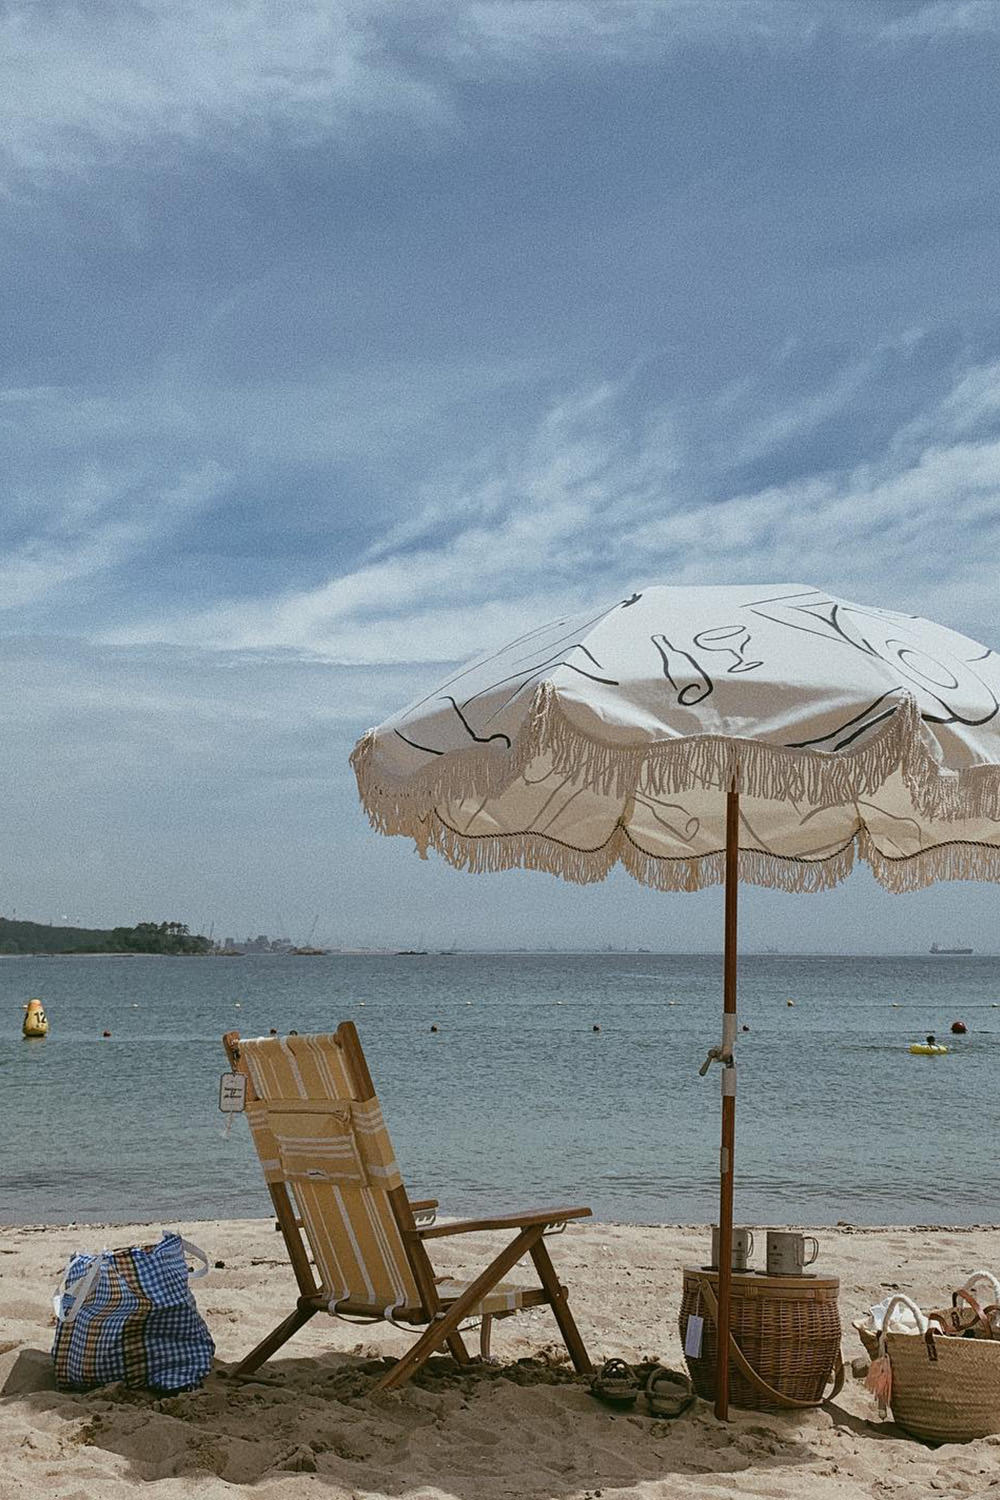 כיסא חוף טומי צהוב עם ידיות מעץ BUSINESS AND PLEASURE